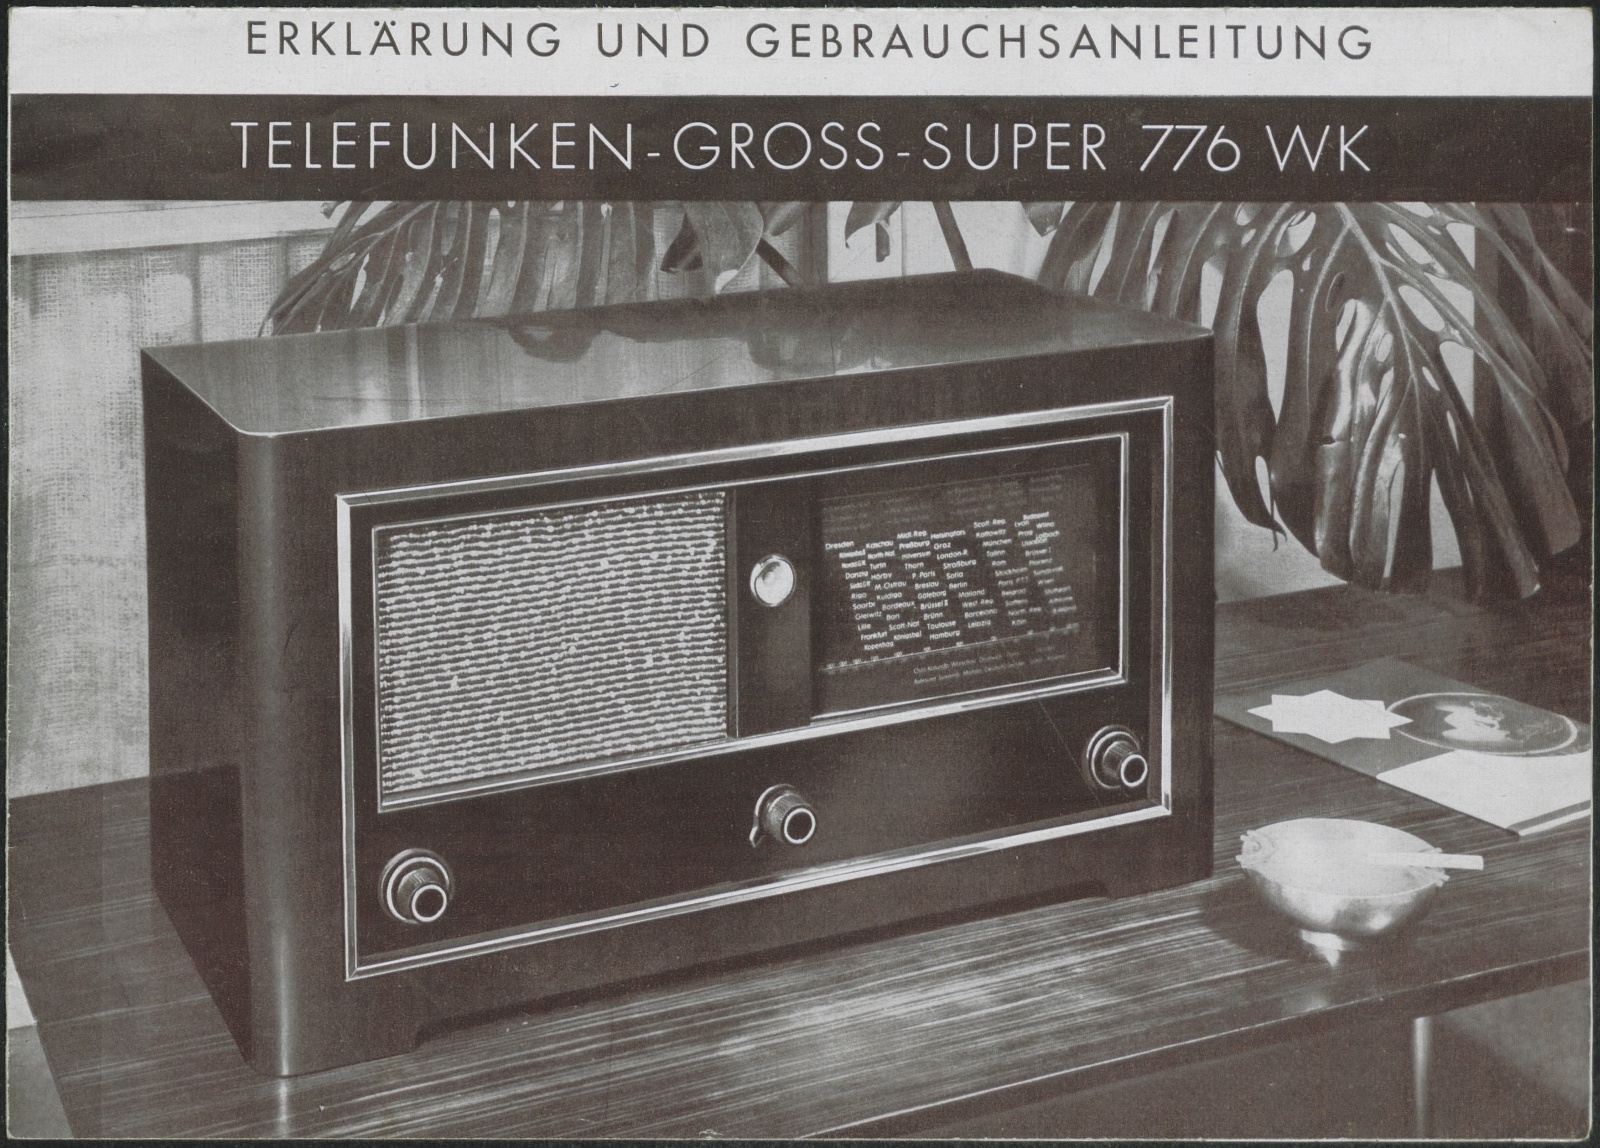 Bedienungsanleitung: Erklärung und Gebrauchsanleitung Telefunken - Gross - Super 776 WK (Stiftung Deutsches Technikmuseum Berlin CC0)